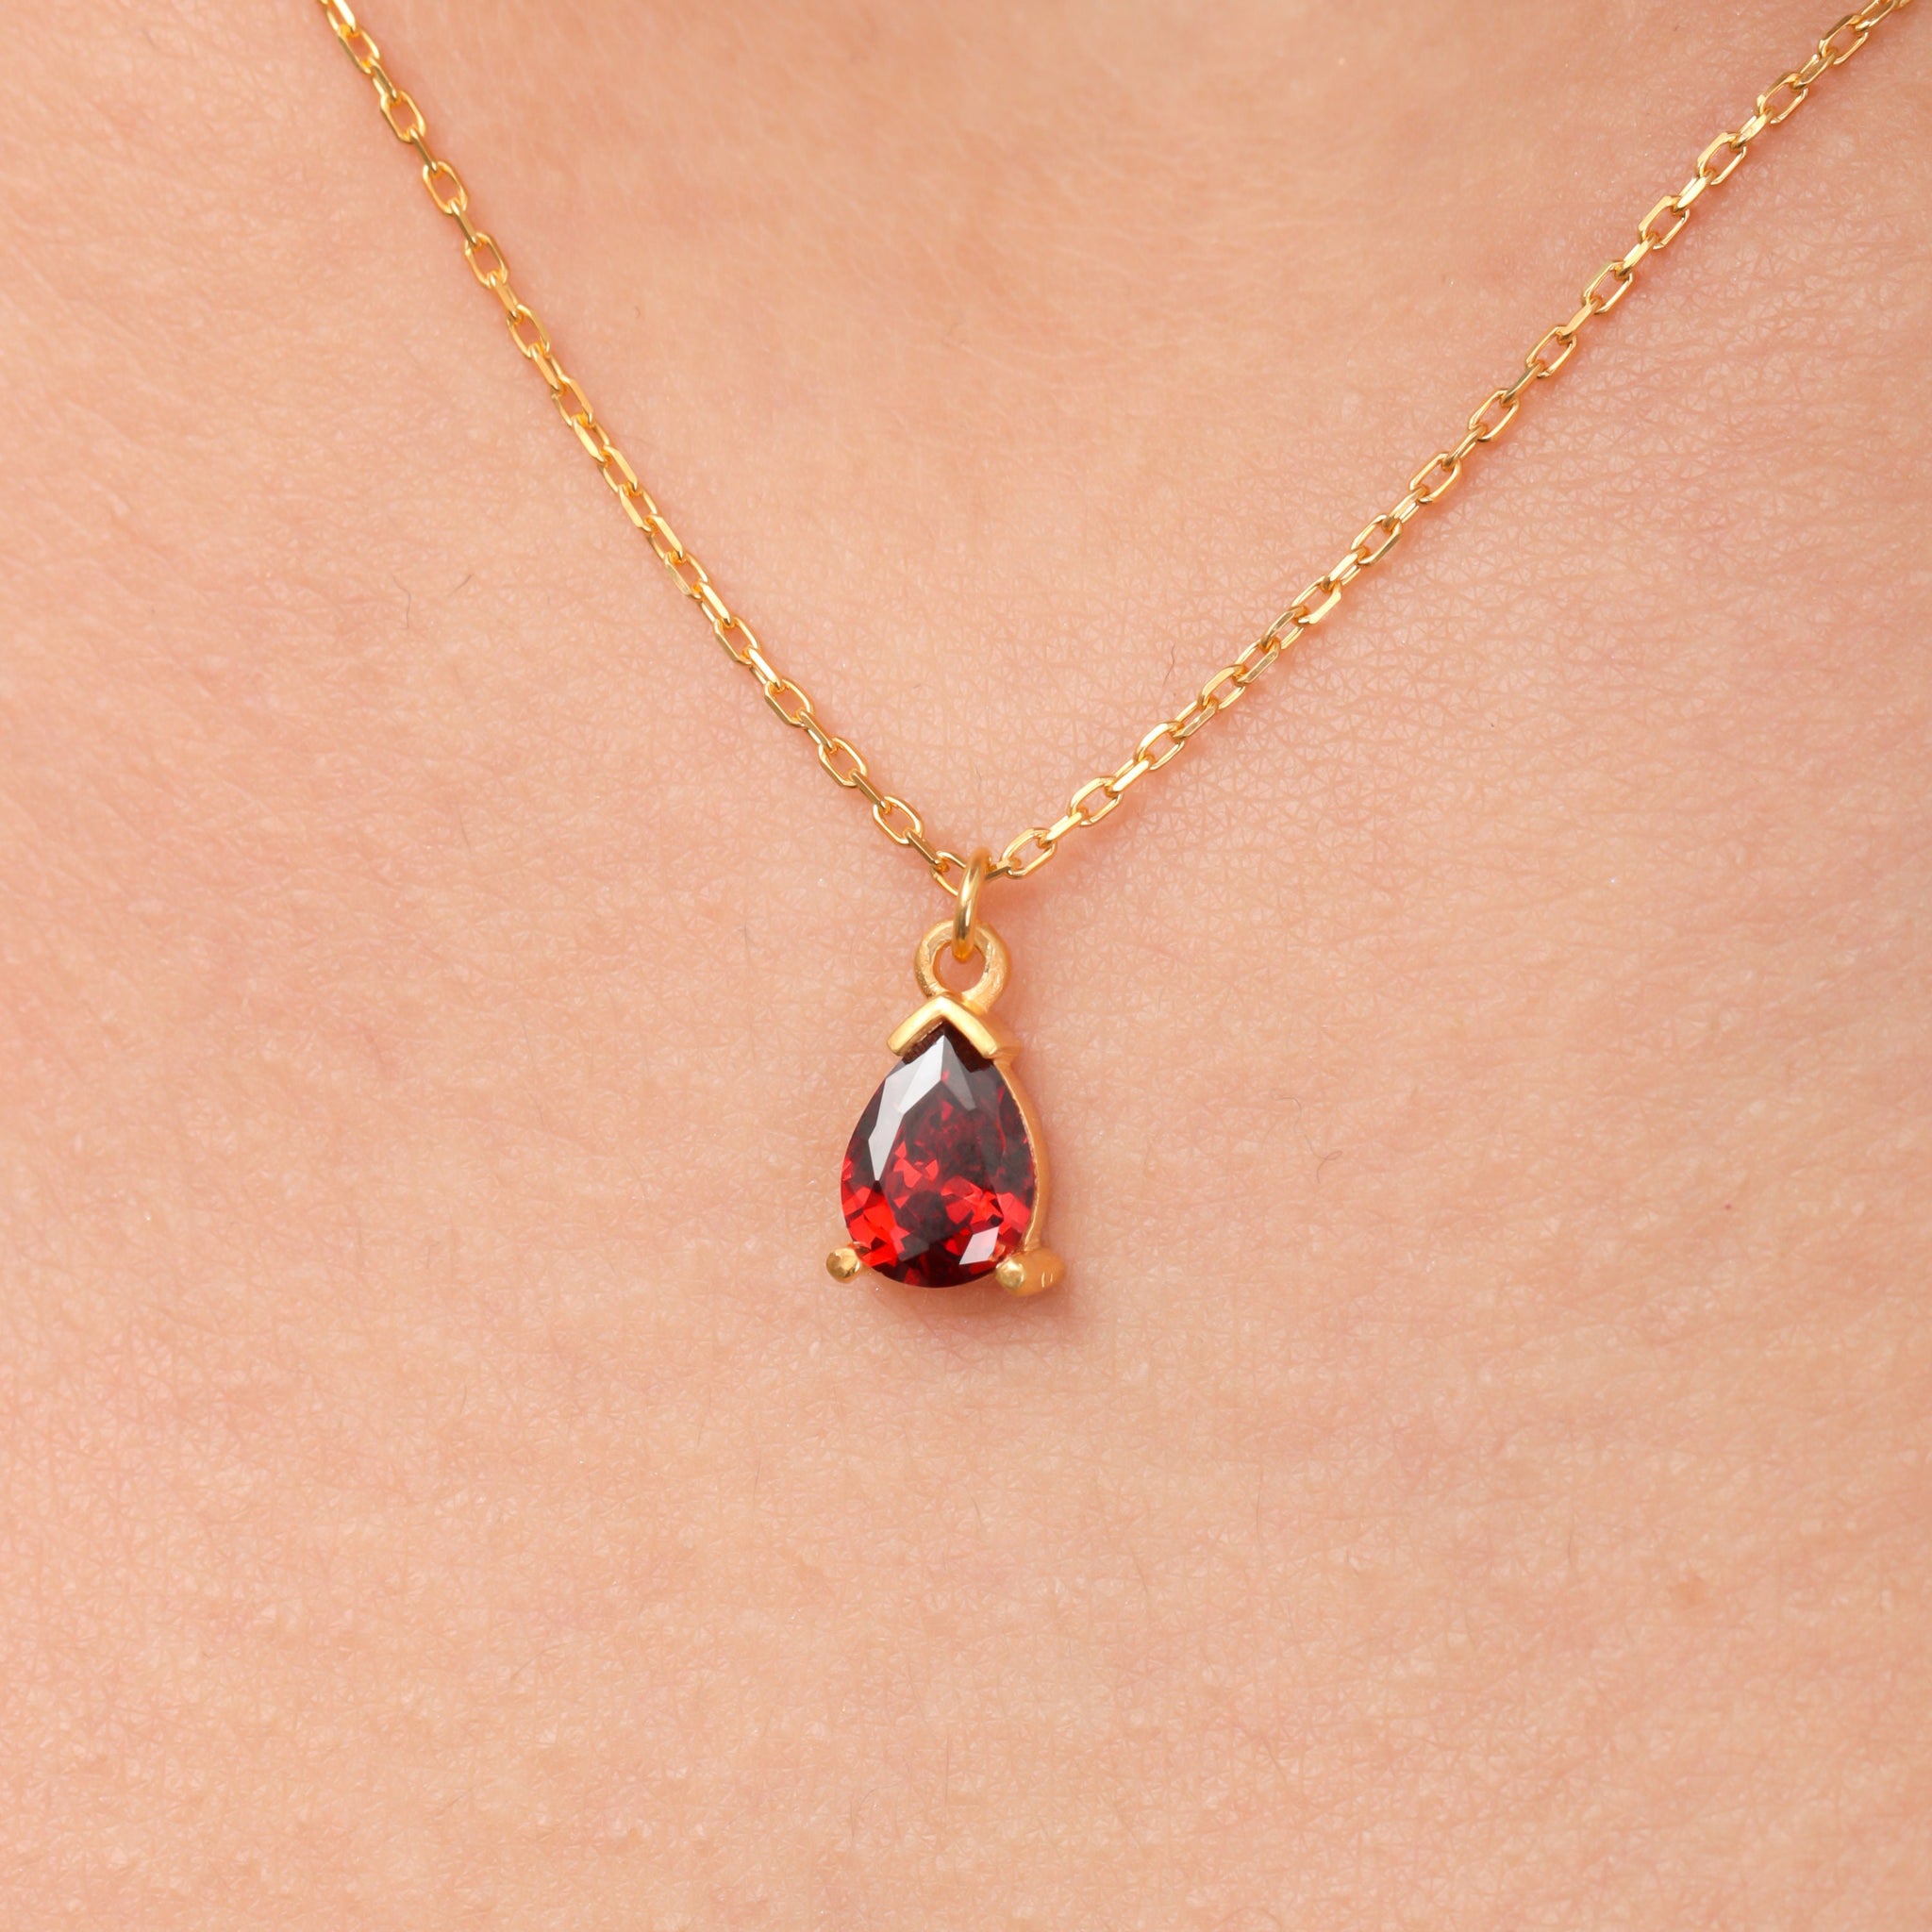 Red Garnet Necklace, Garnet Crystal Pendant, January Birthstone Necklace, Red Garnet Jewelry, Red Garnet Choker, Gift For Men Women